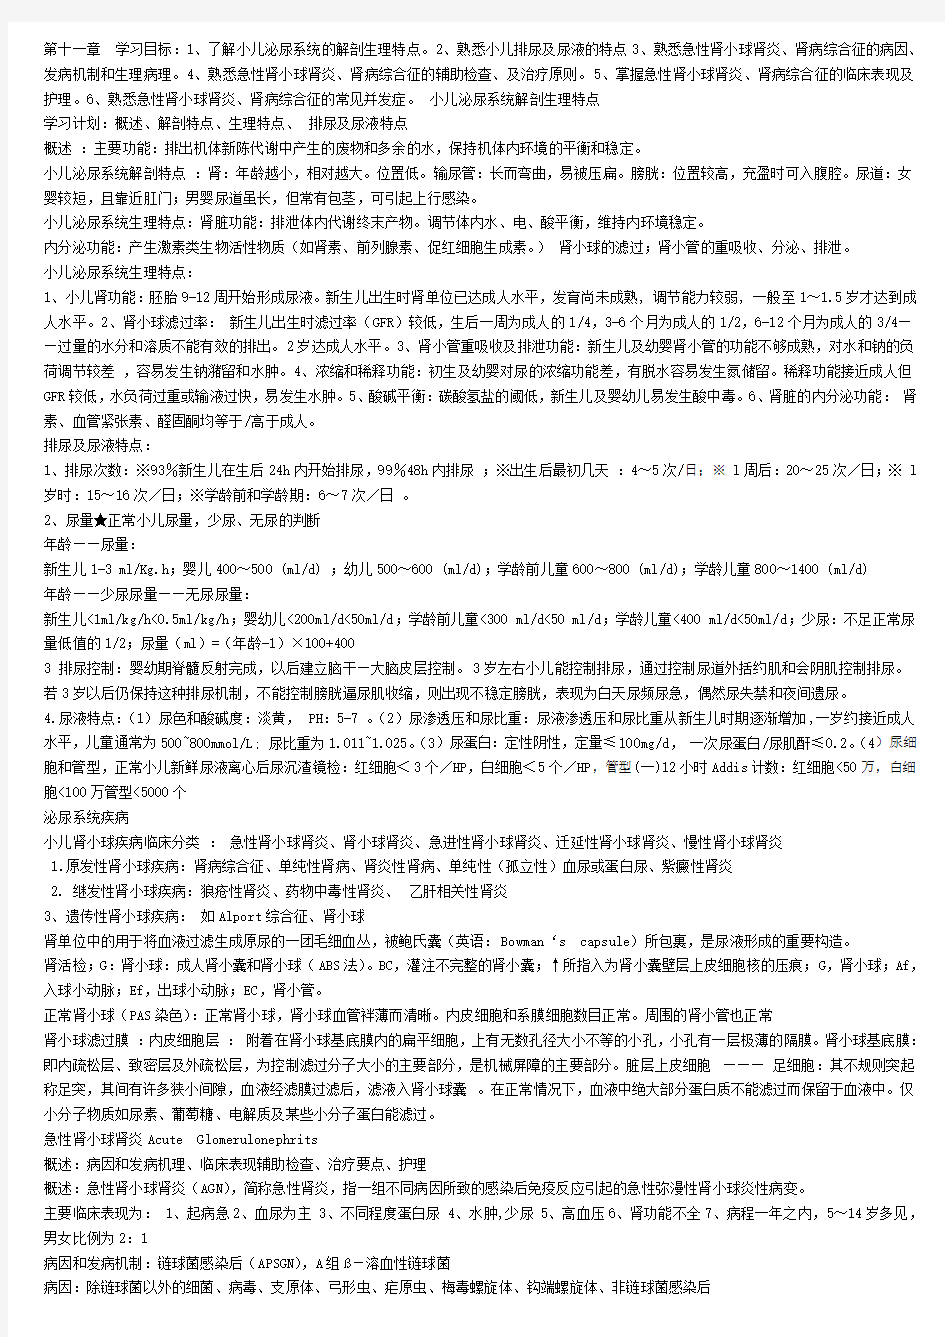 急性肾小球肾炎(浙江中医药大学)